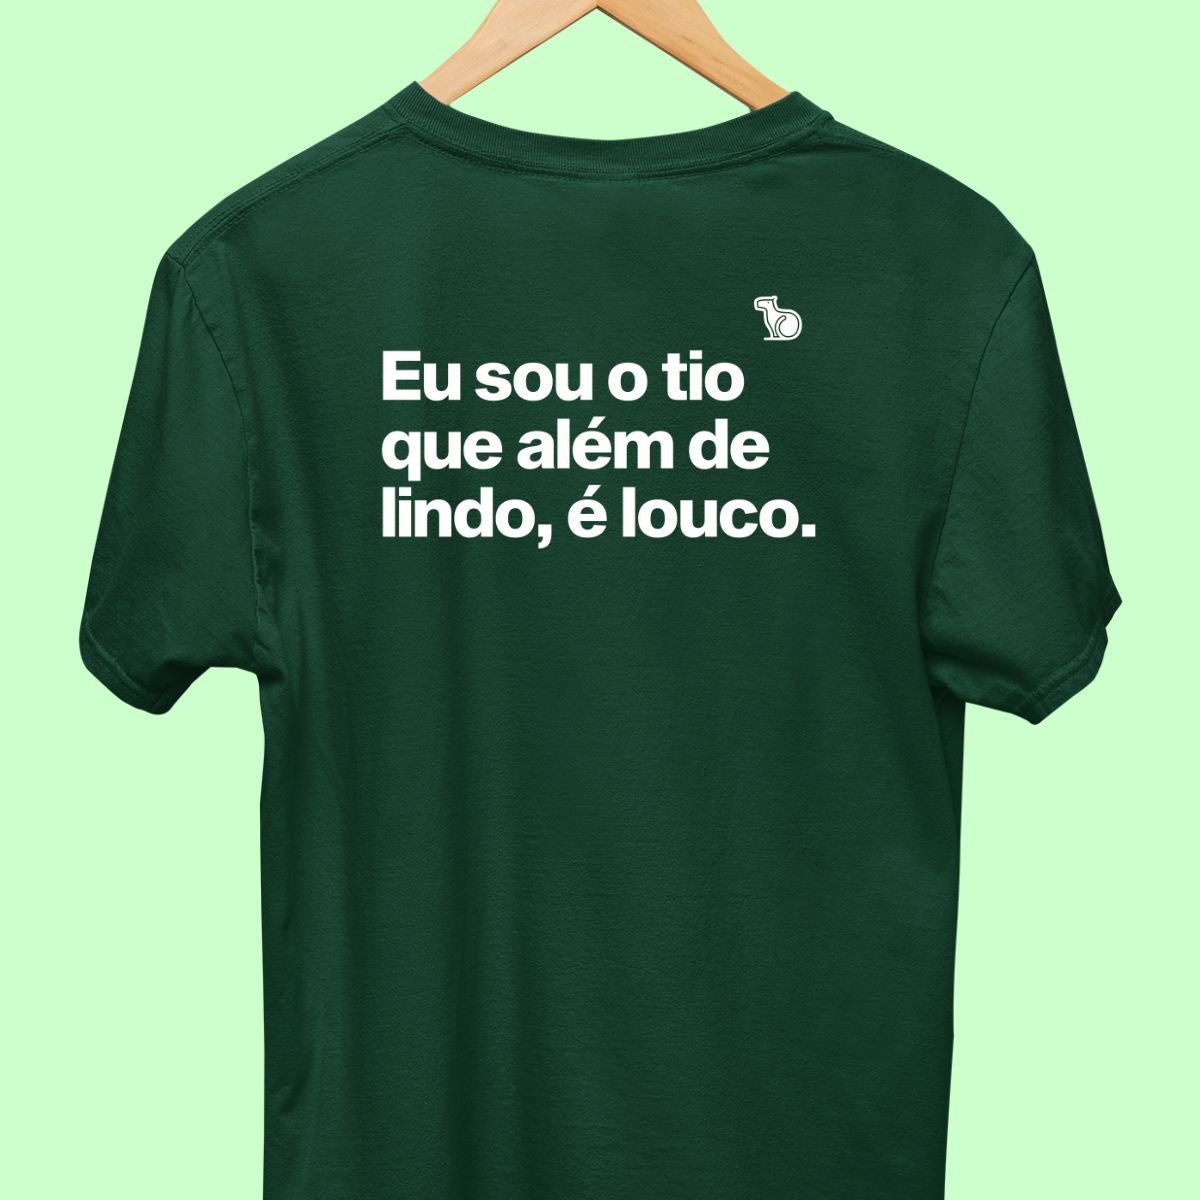 Camiseta com a frase "Eu sou o tio que além de lindo, é louco." masculina verde.